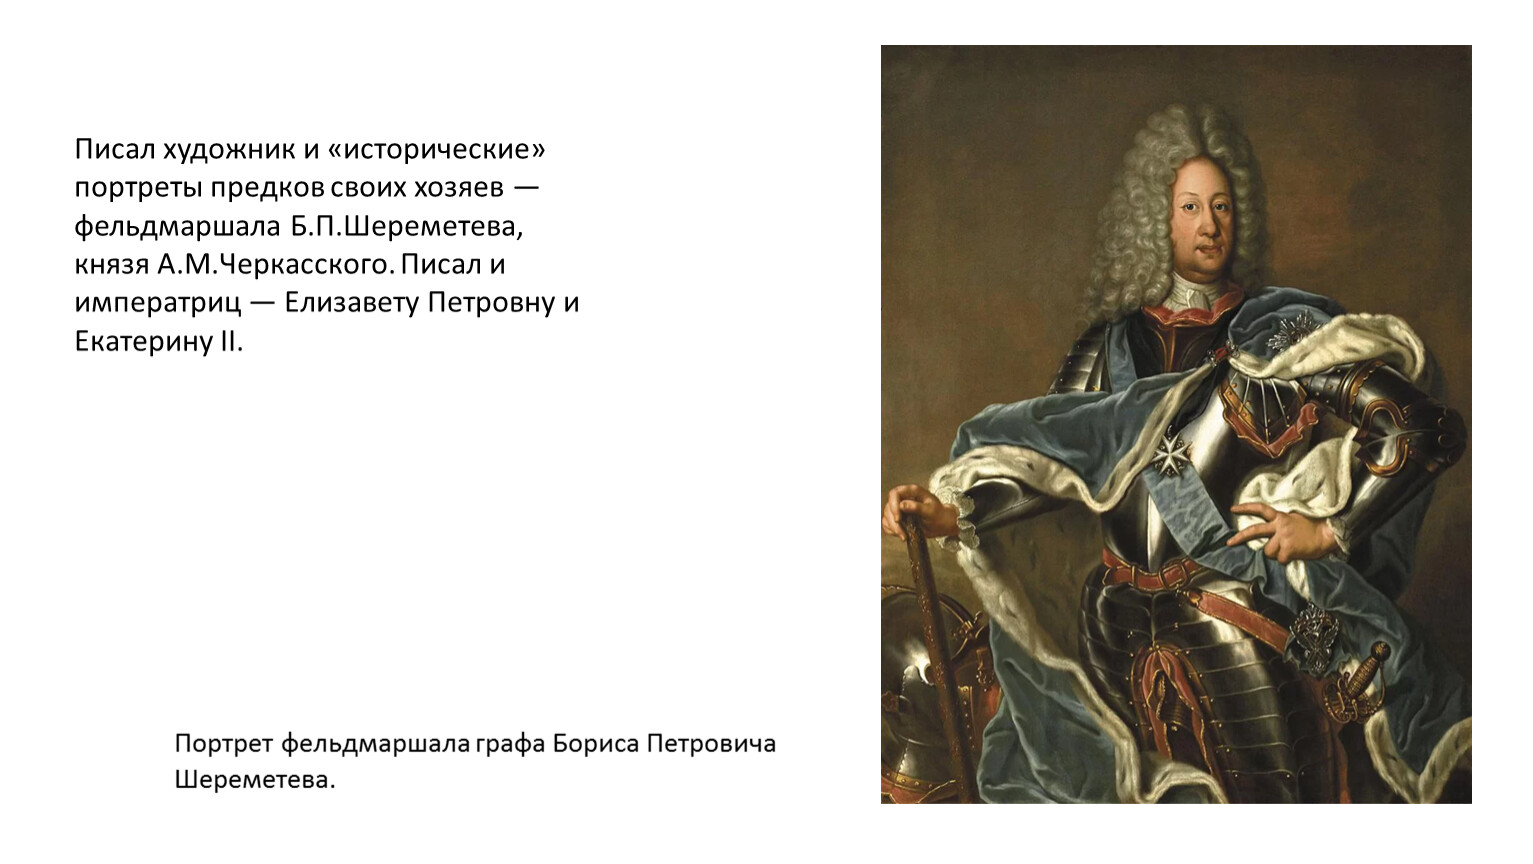 Портрет Елизаветы Петровны императрицы